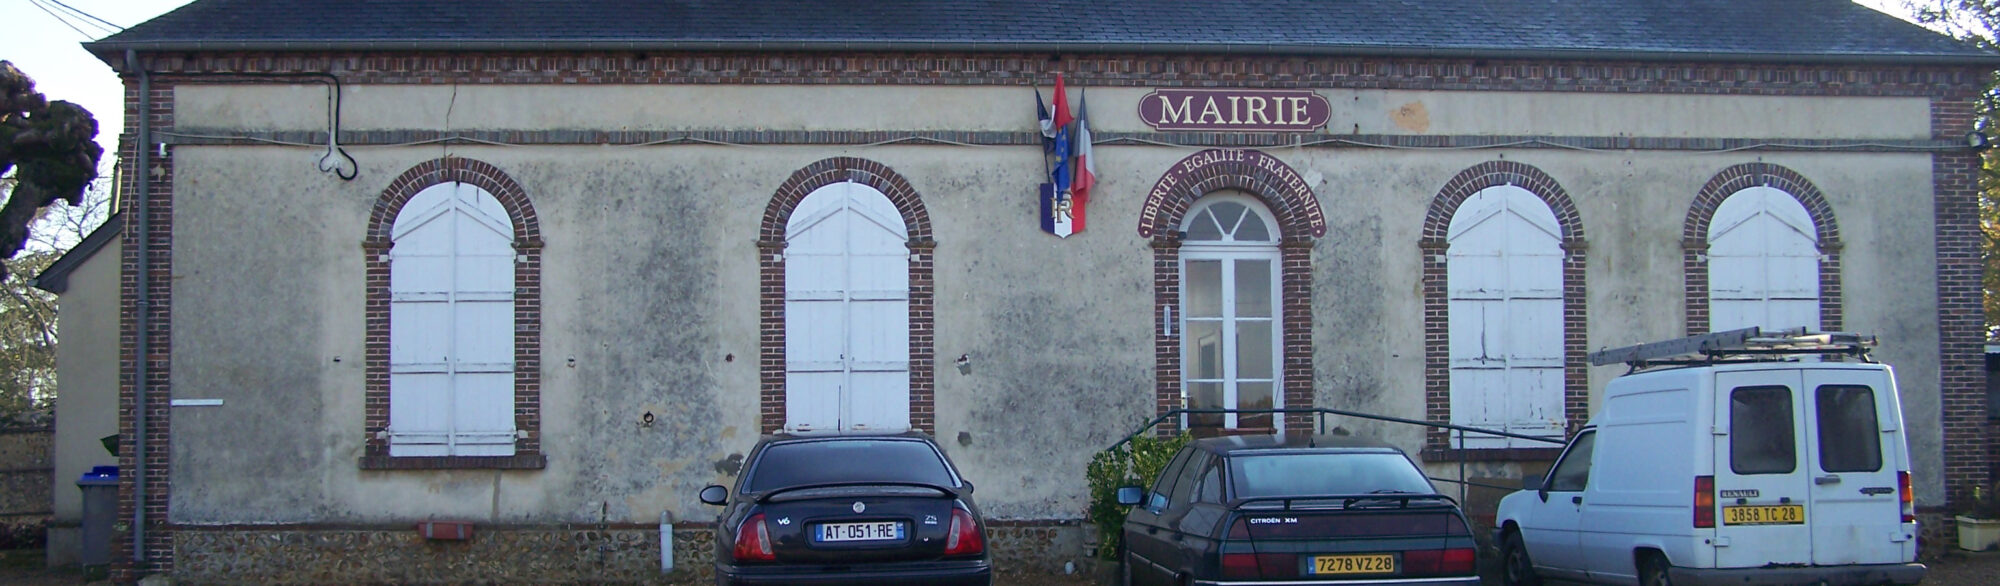 Mairie Montigny-Bandeau